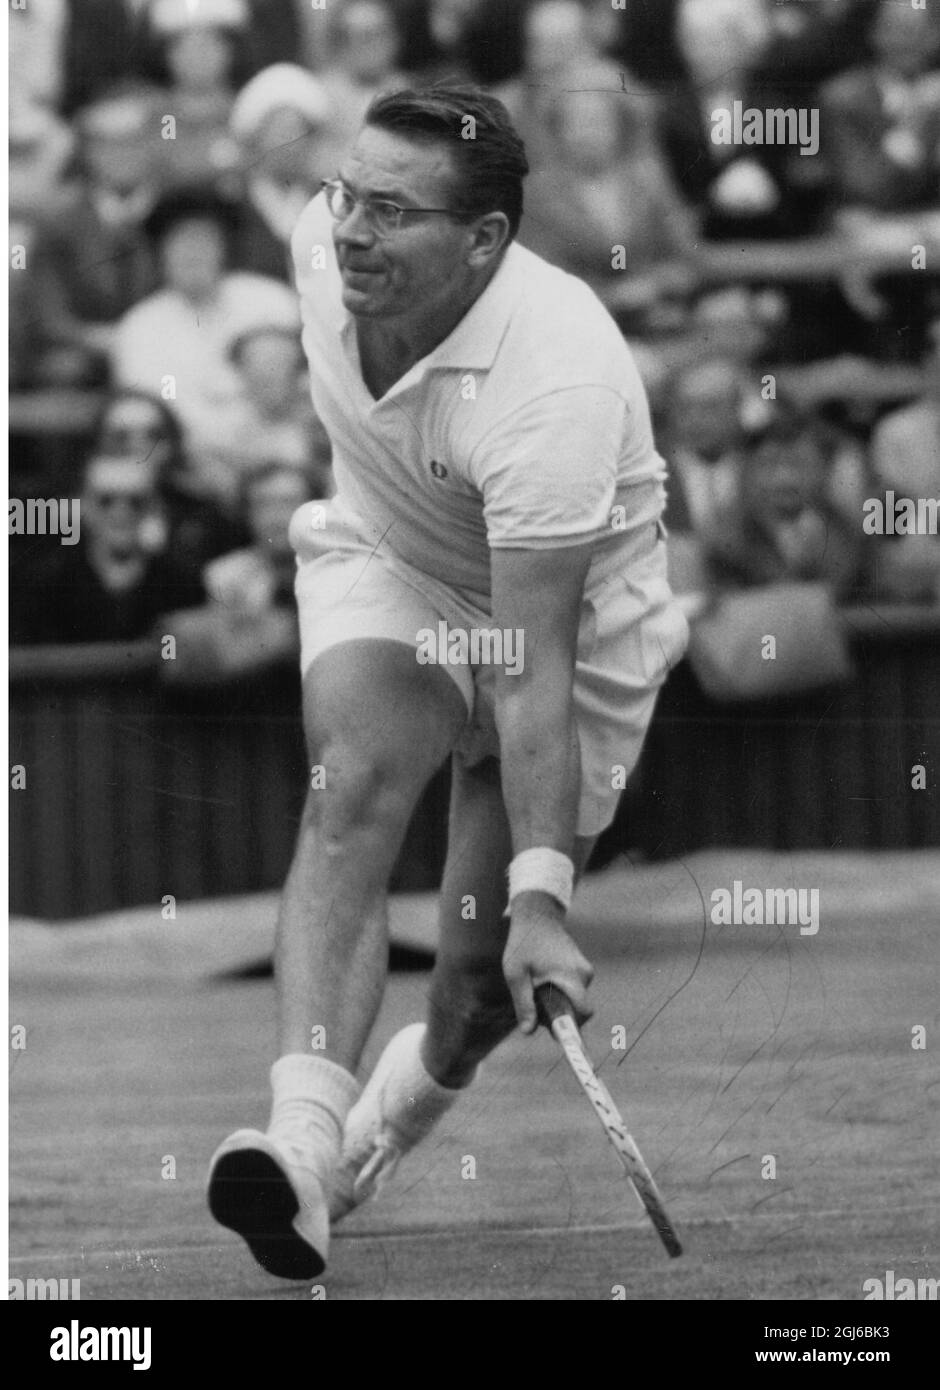 Jaroslav Drobny - Asso da tennis ceco (ora cittadino egiziano) - Wimbledon - 28 giugno 1958 Foto Stock